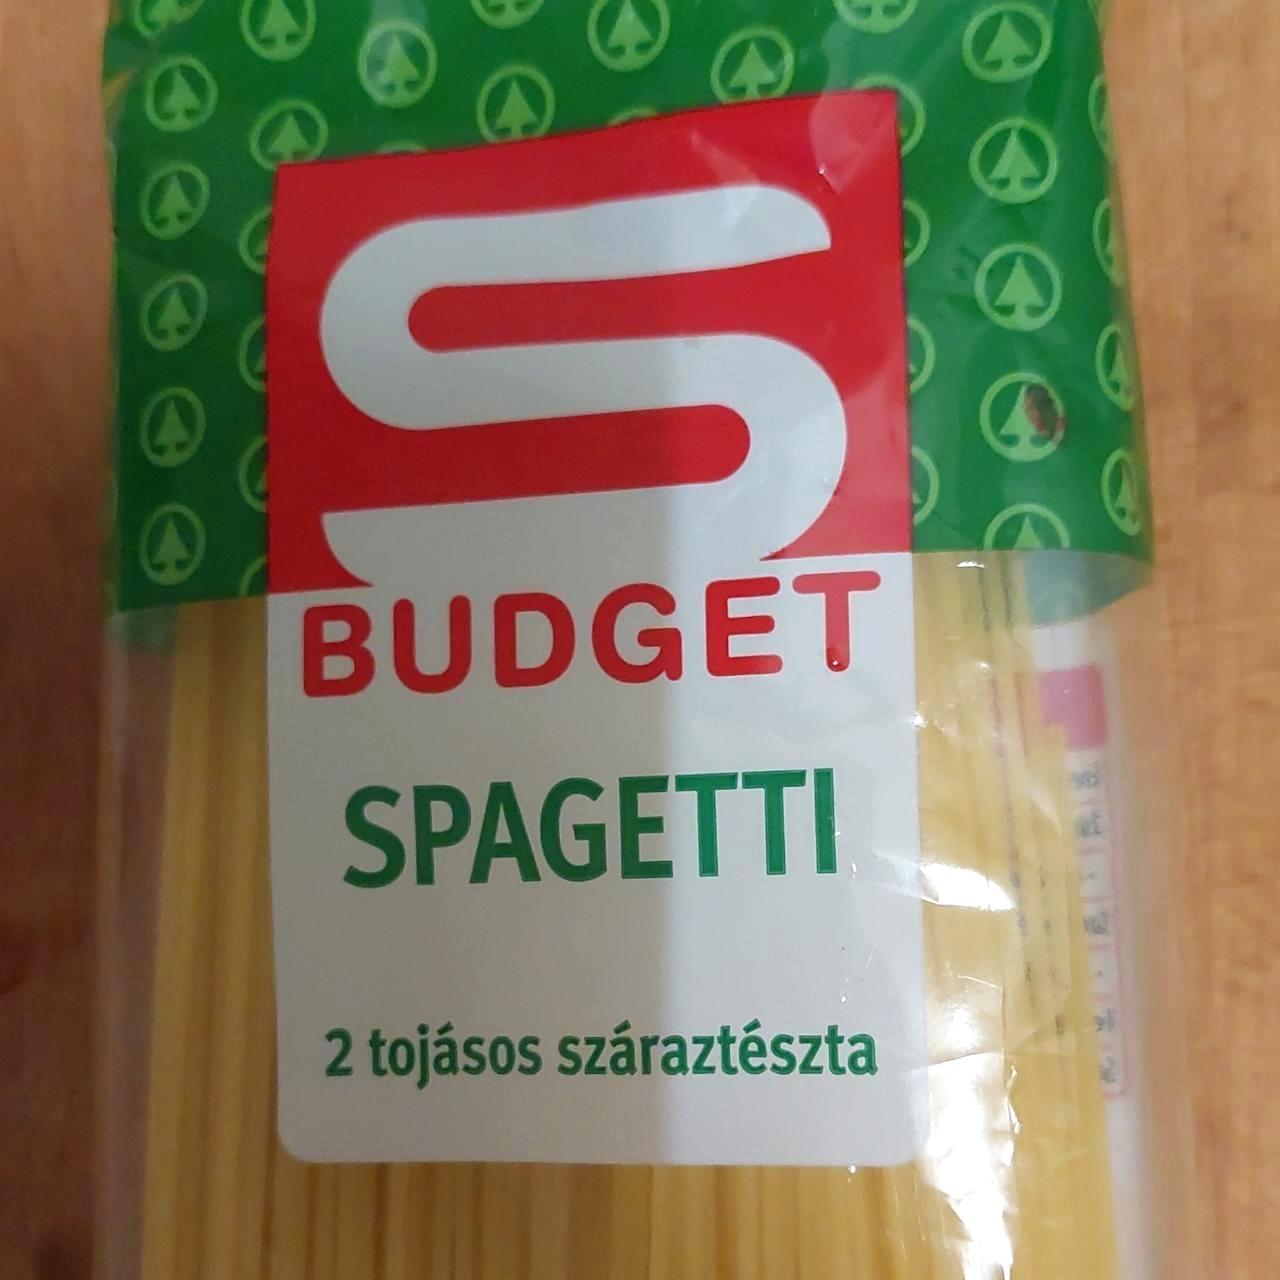 Képek - Spagetti 2 tojásos száraztészta S Budget